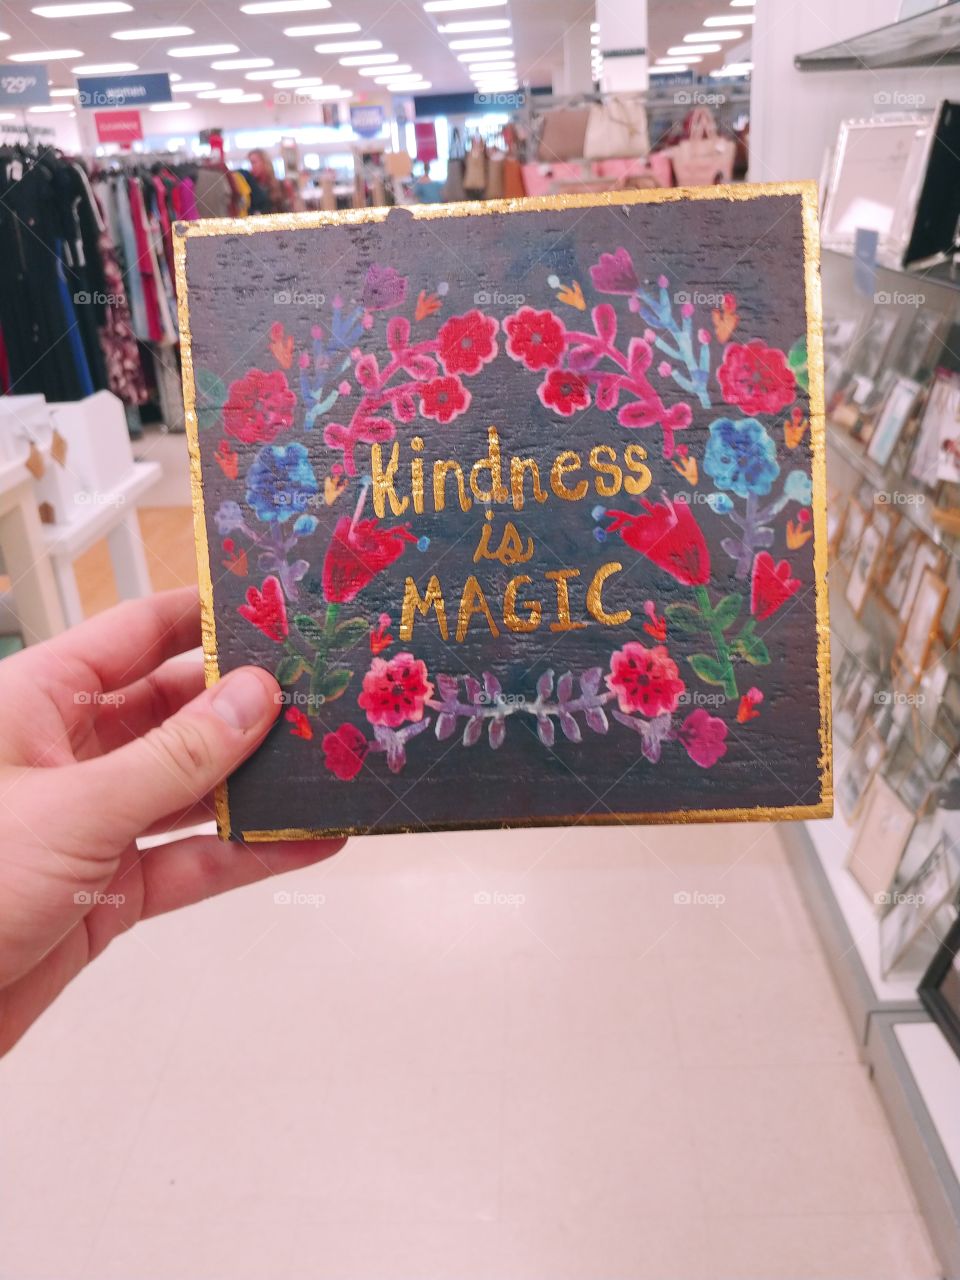 "Kindness is Magic".